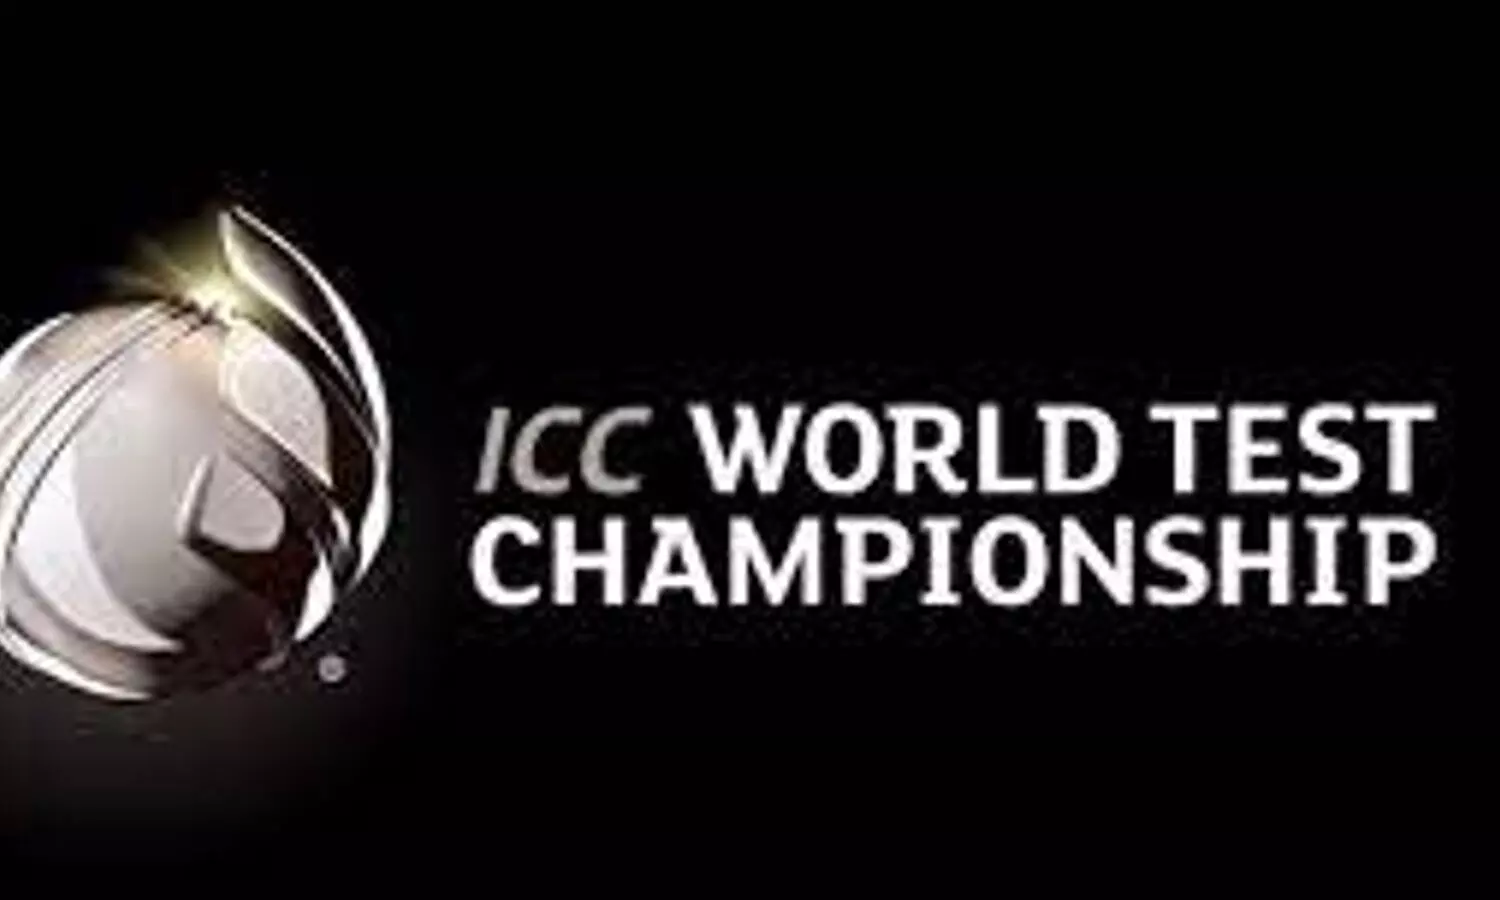 आईसीसी विश्व टेस्ट चैंपियंन शिप की तस्वीर (फोटो:सोशल मीडिया)